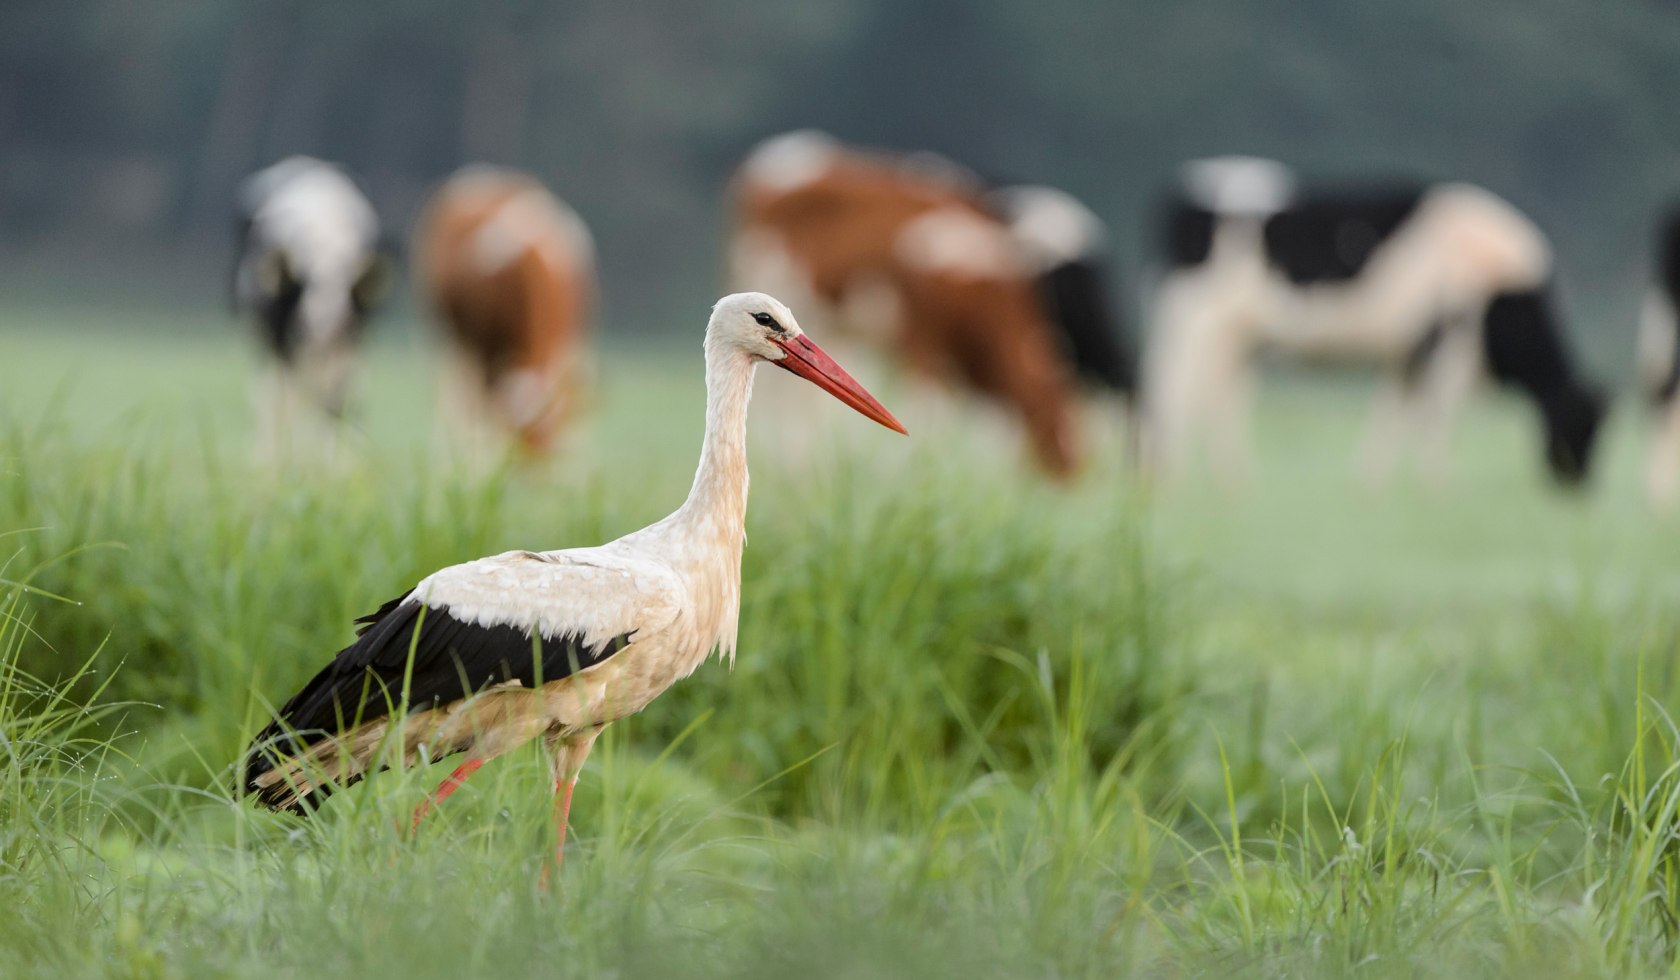 White stork in a meadow, © TourismusMarketing Niedersachsen GmbH / Dieter Damschen